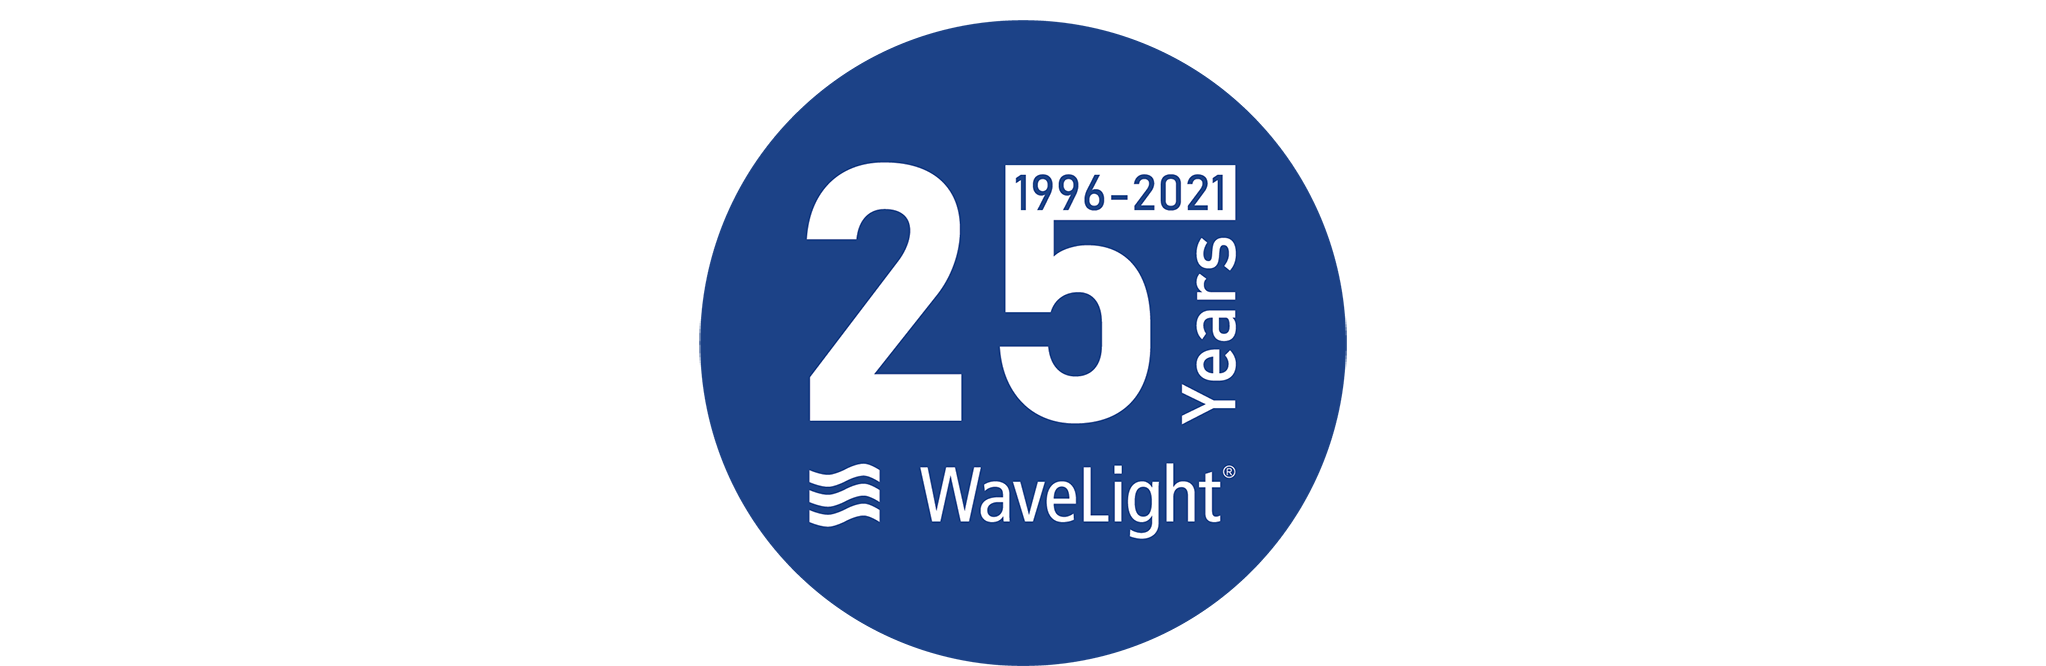 25 Years of Wavelight